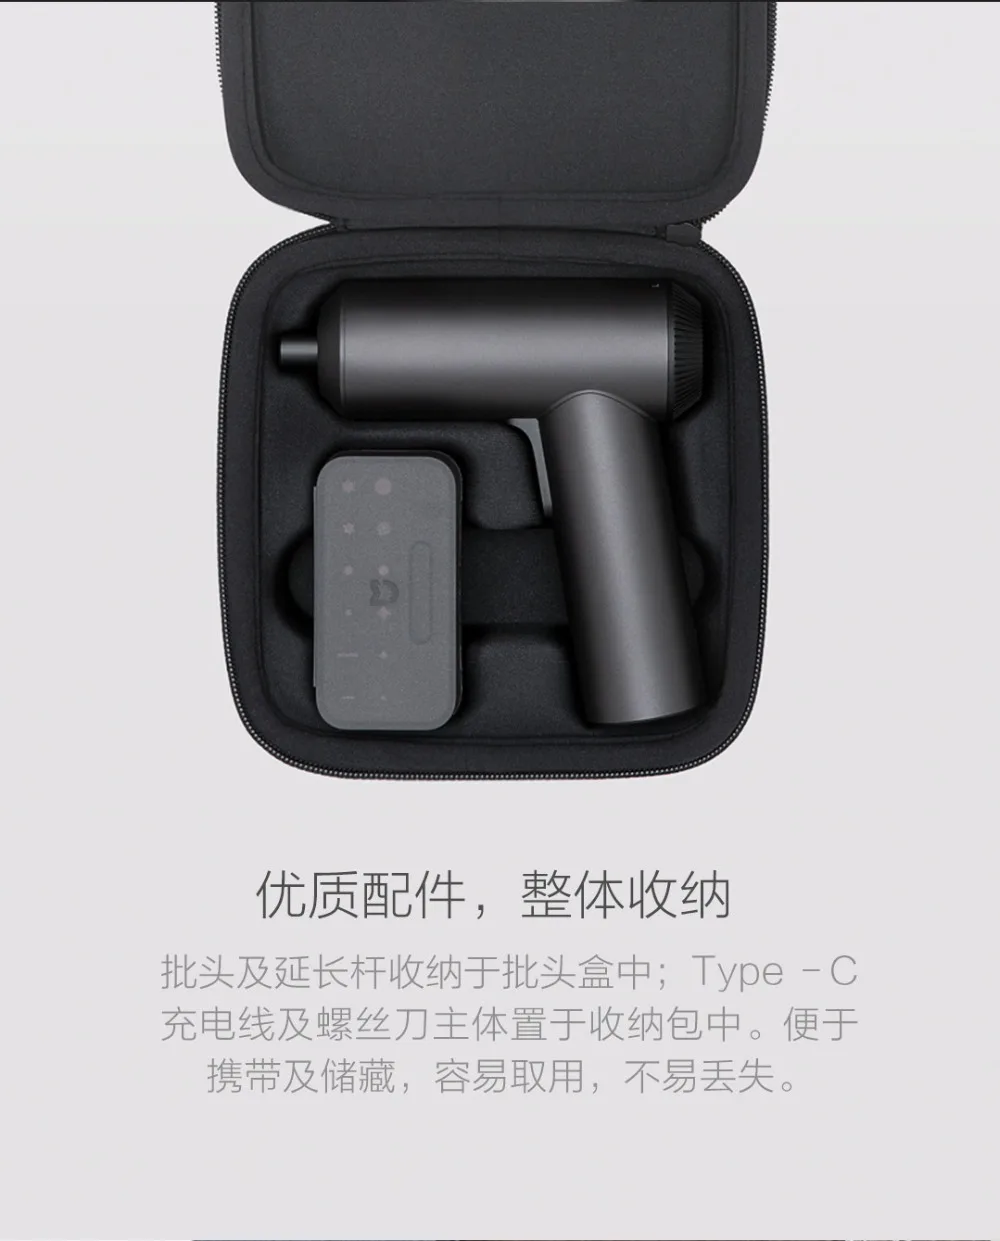 Xiaomi Mijia Electric Screwdriver (17)